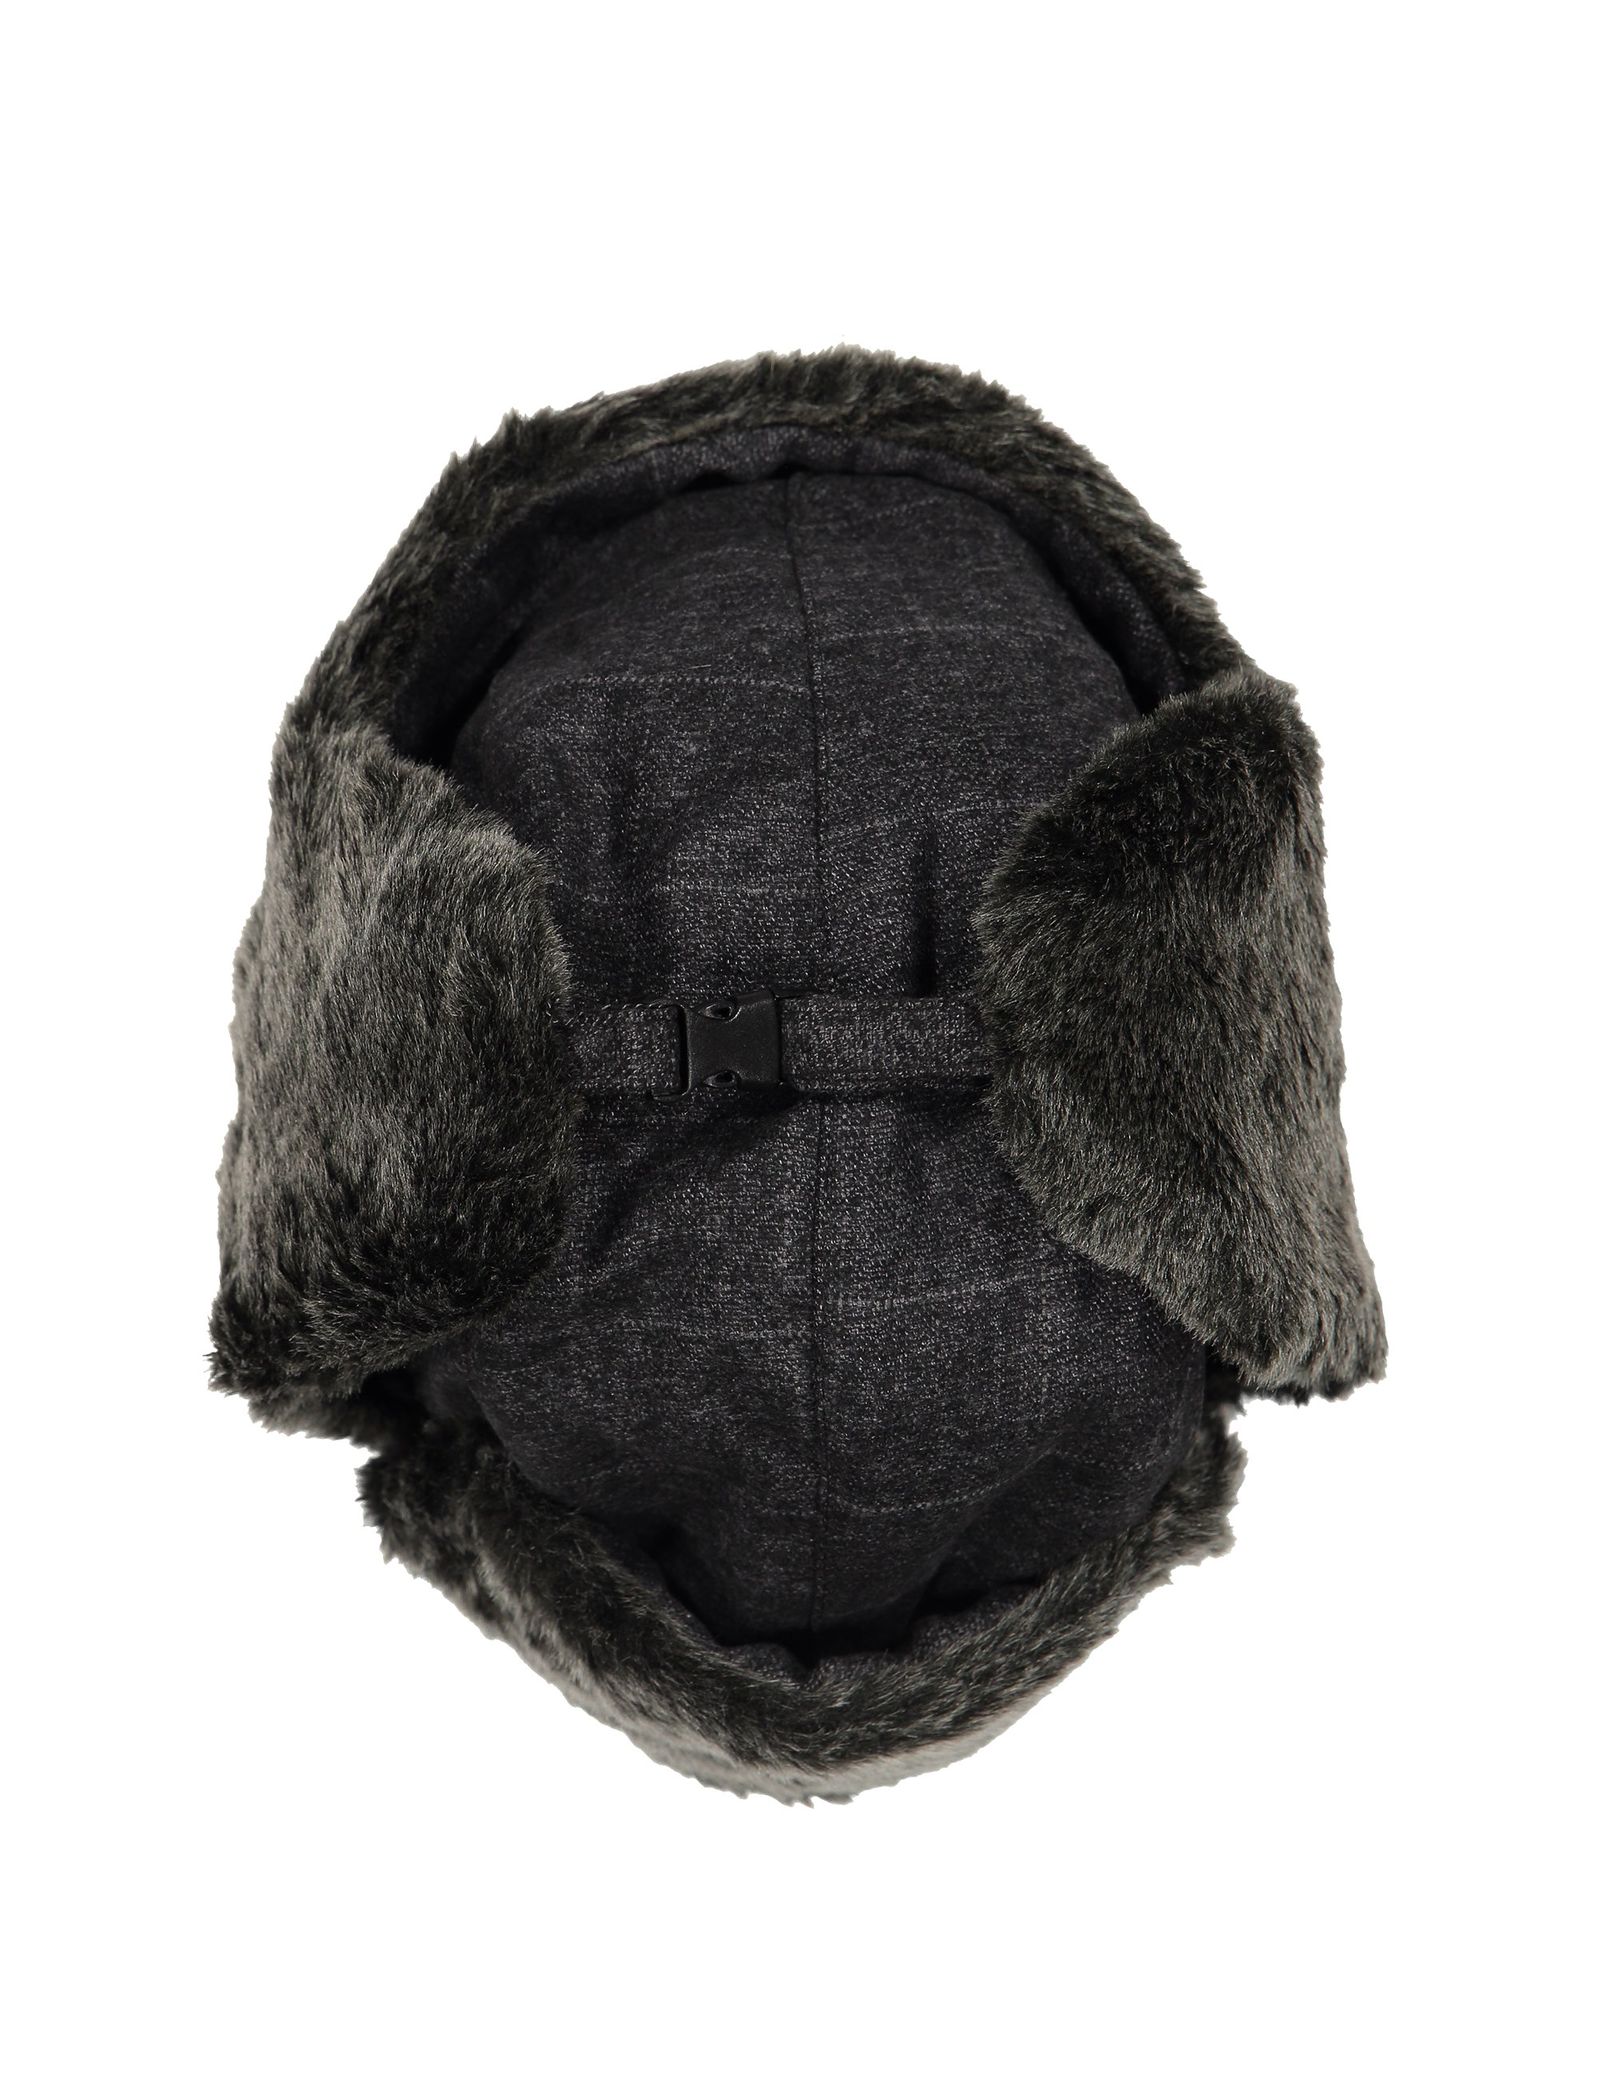 کلاه زمستانی مردانه - مانگو - طوسي - 7